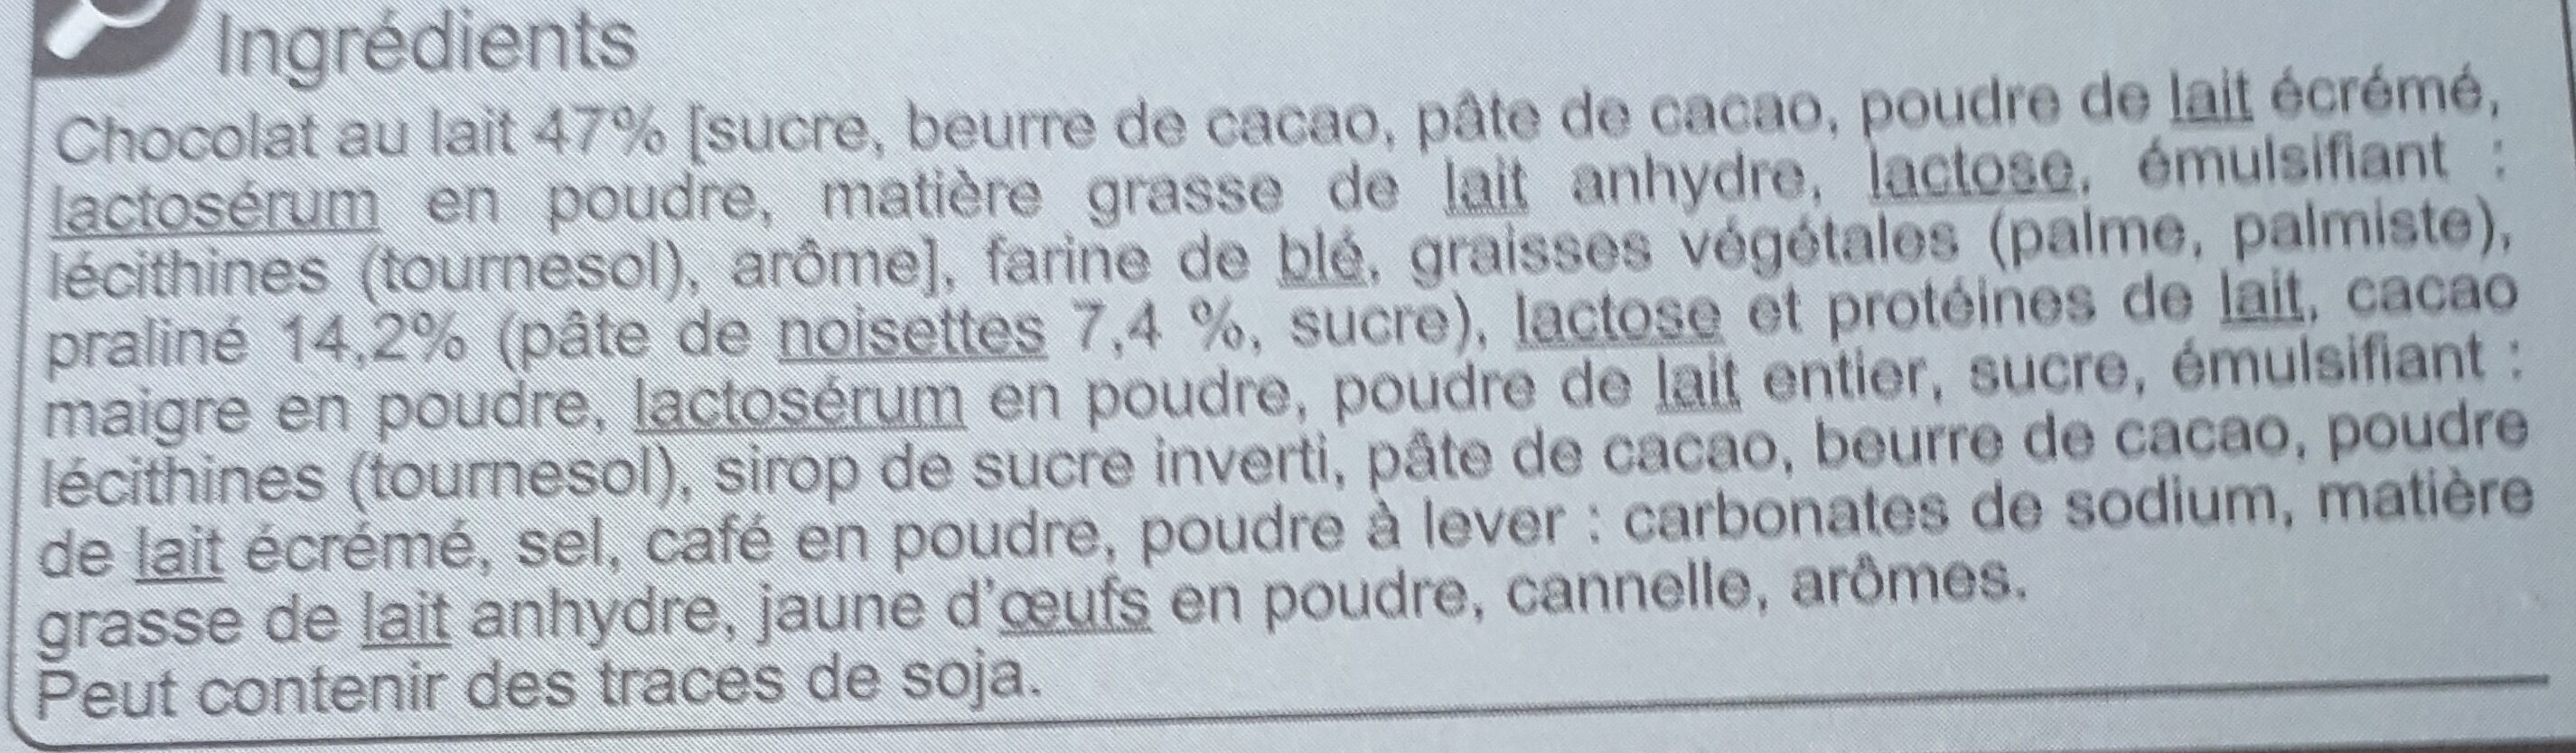 Gaufrettes gourmandes chocolat au lait fourrage goût cacao et noisette - Ingredients - fr